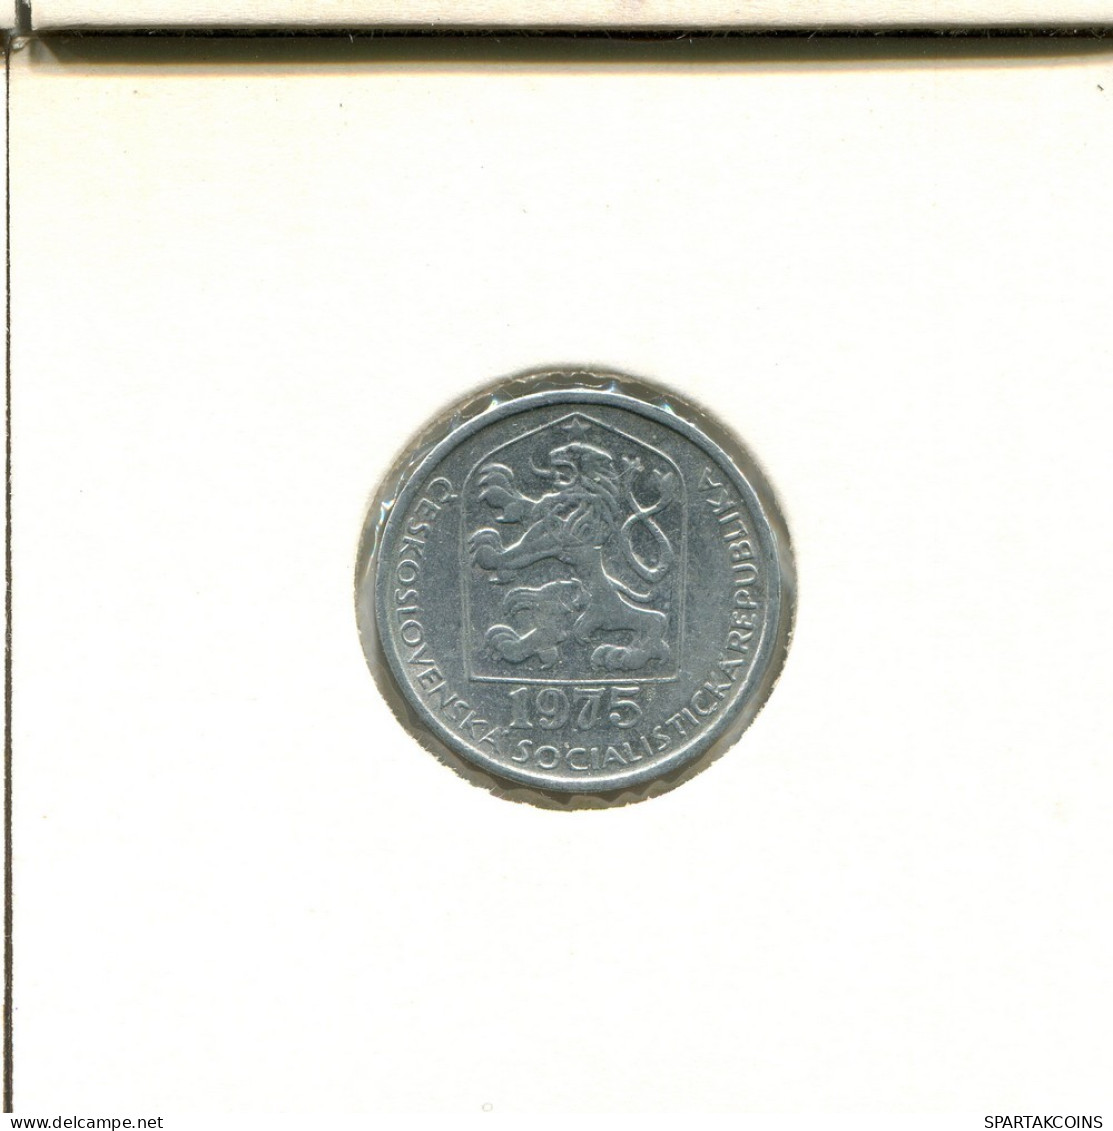 10 HALERU 1975 CZECHOSLOVAKIA Coin #AS936.U.A - Checoslovaquia